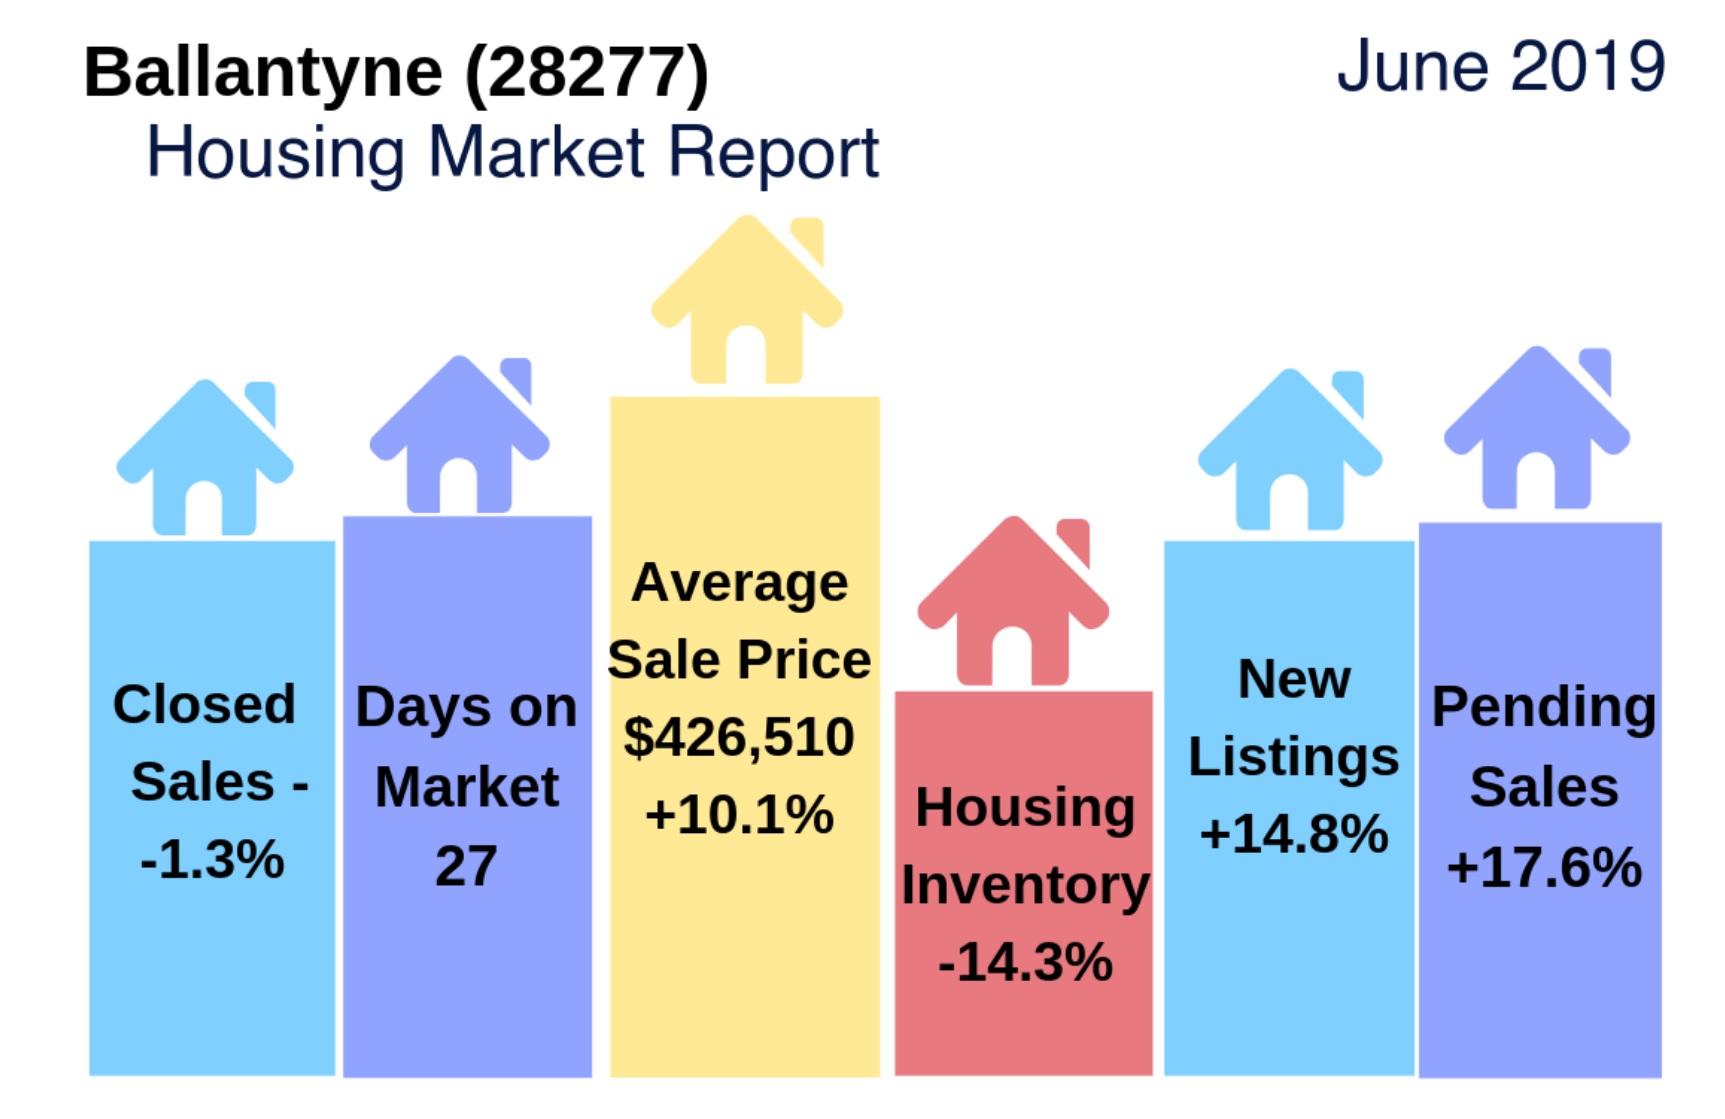 Ballantyne (28277 Zip Code) Housing Update + Video: June 2019